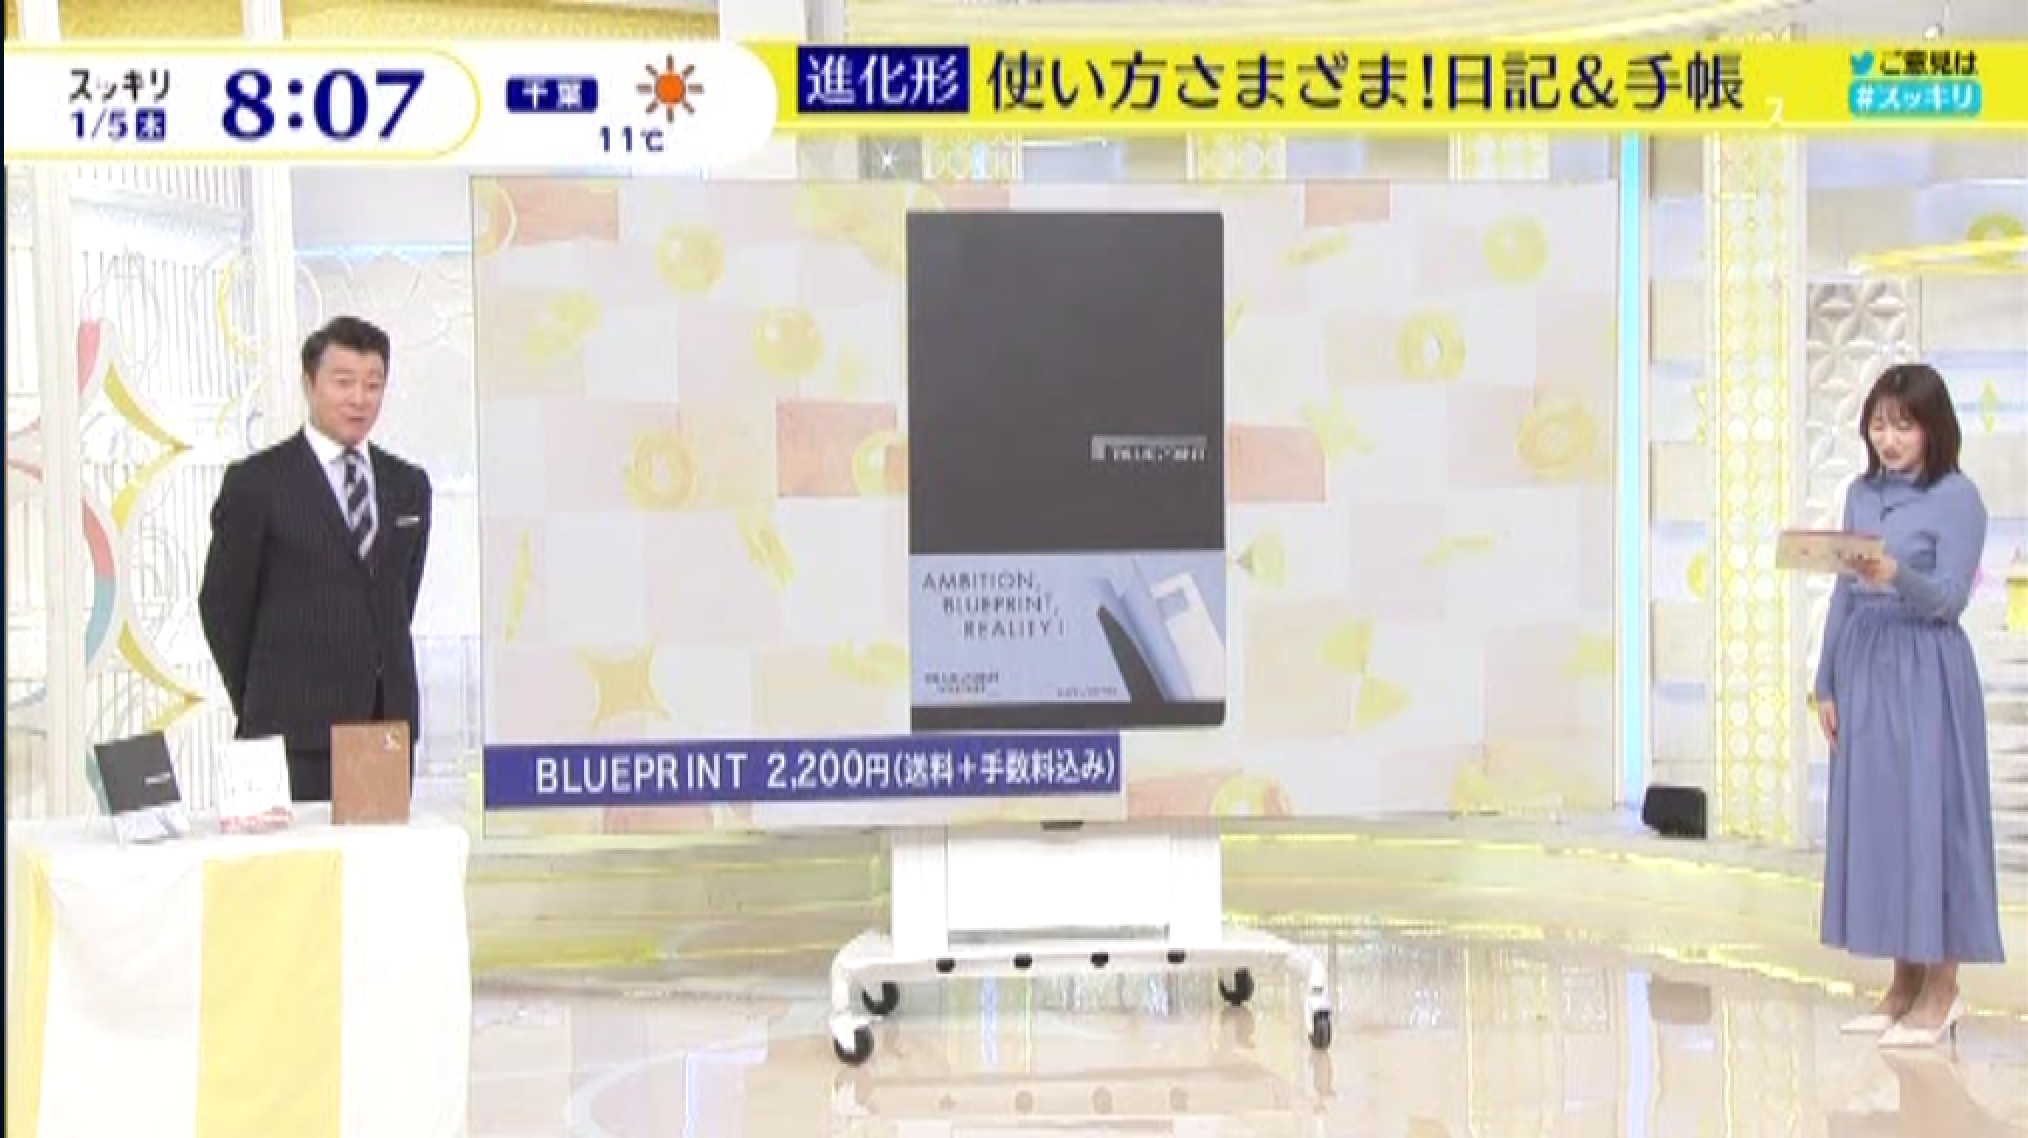 日本テレビ様「スッキリ」でBLUEPRINTが紹介されました。